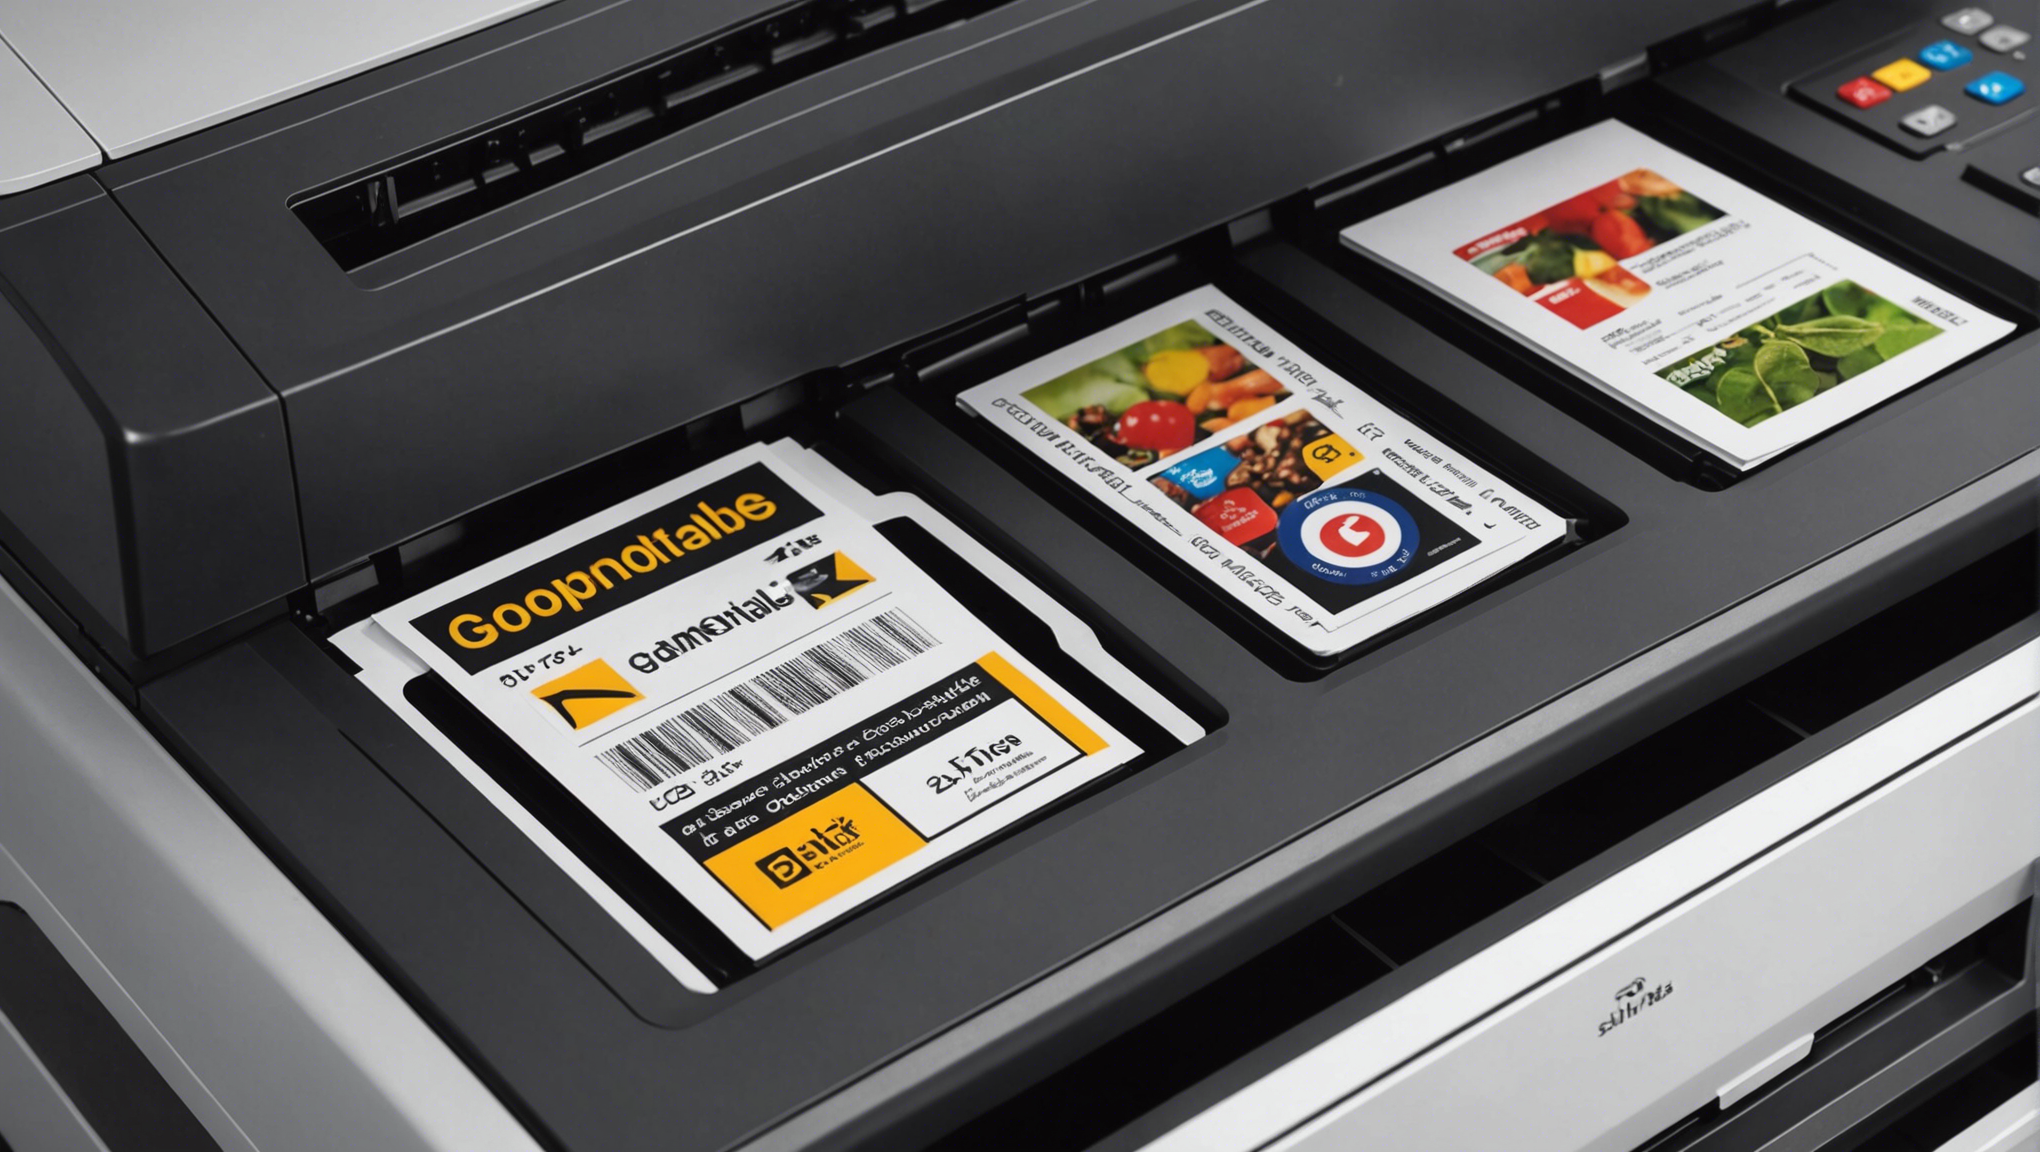 découvrez notre comparaison de gammes d'imprimantes professionnelles abordables pour trouver l'équipement parfait au meilleur prix.